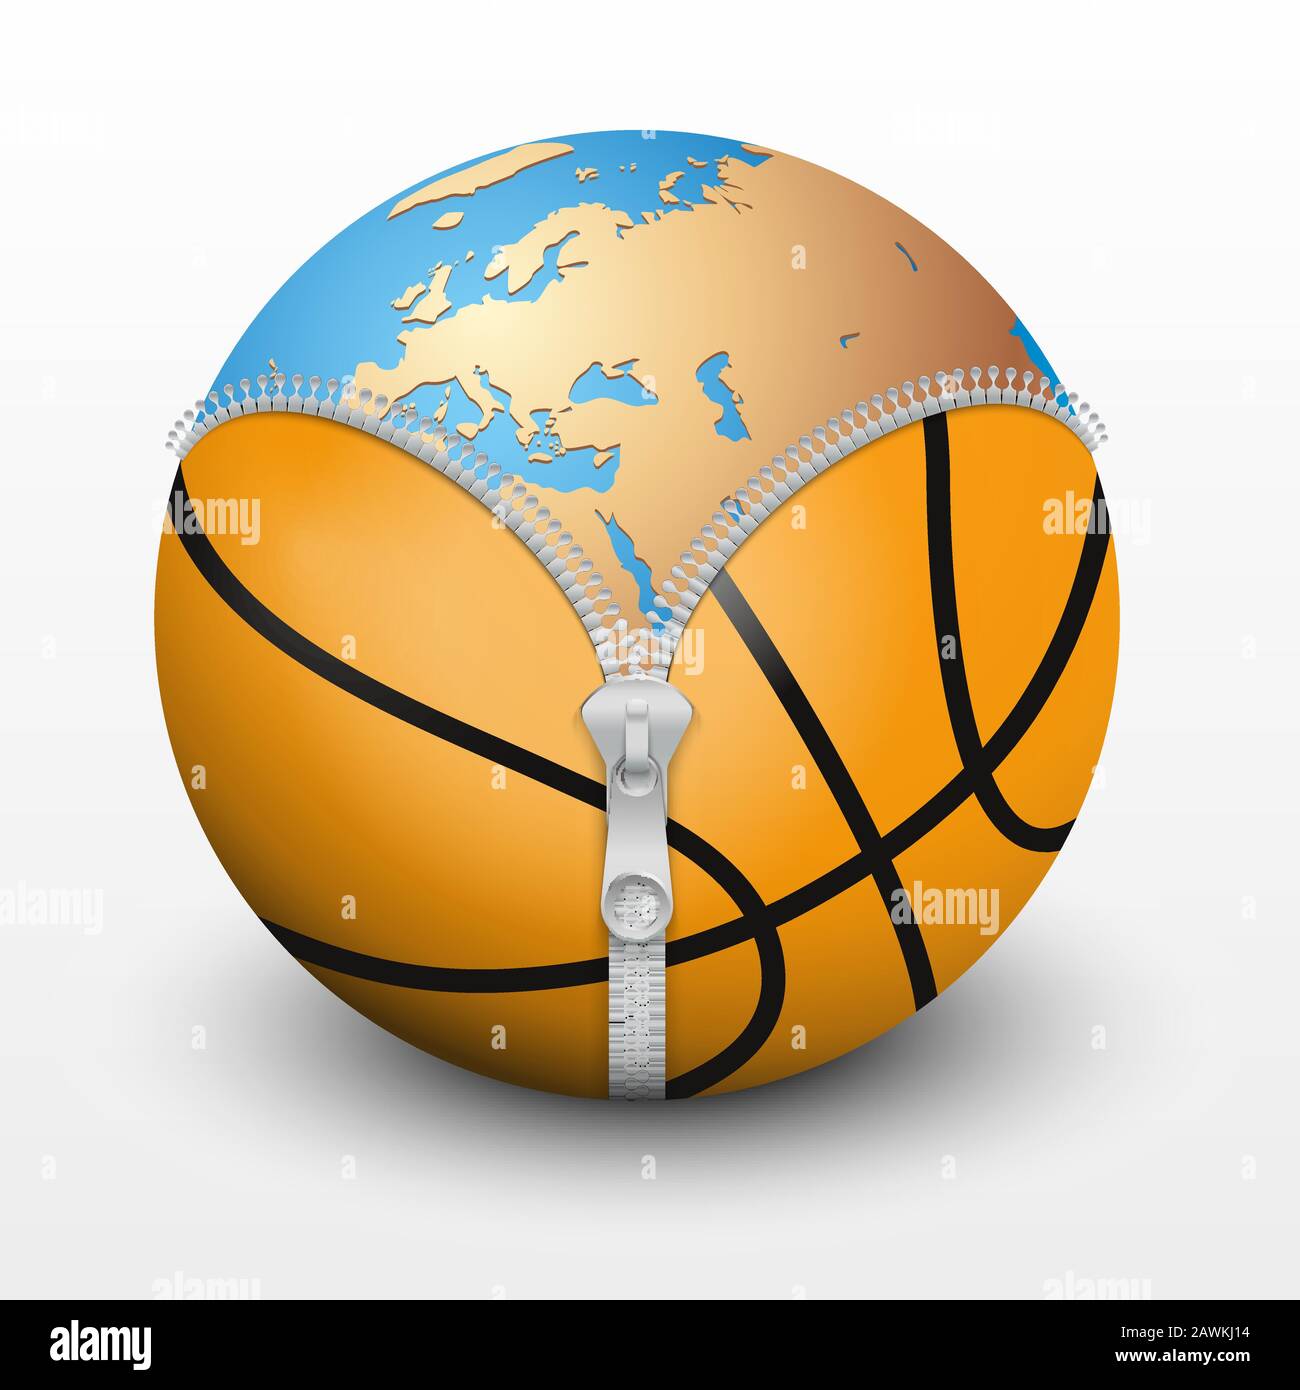 Pianeta Terra all'interno della palla da basket Immagine e Vettoriale -  Alamy